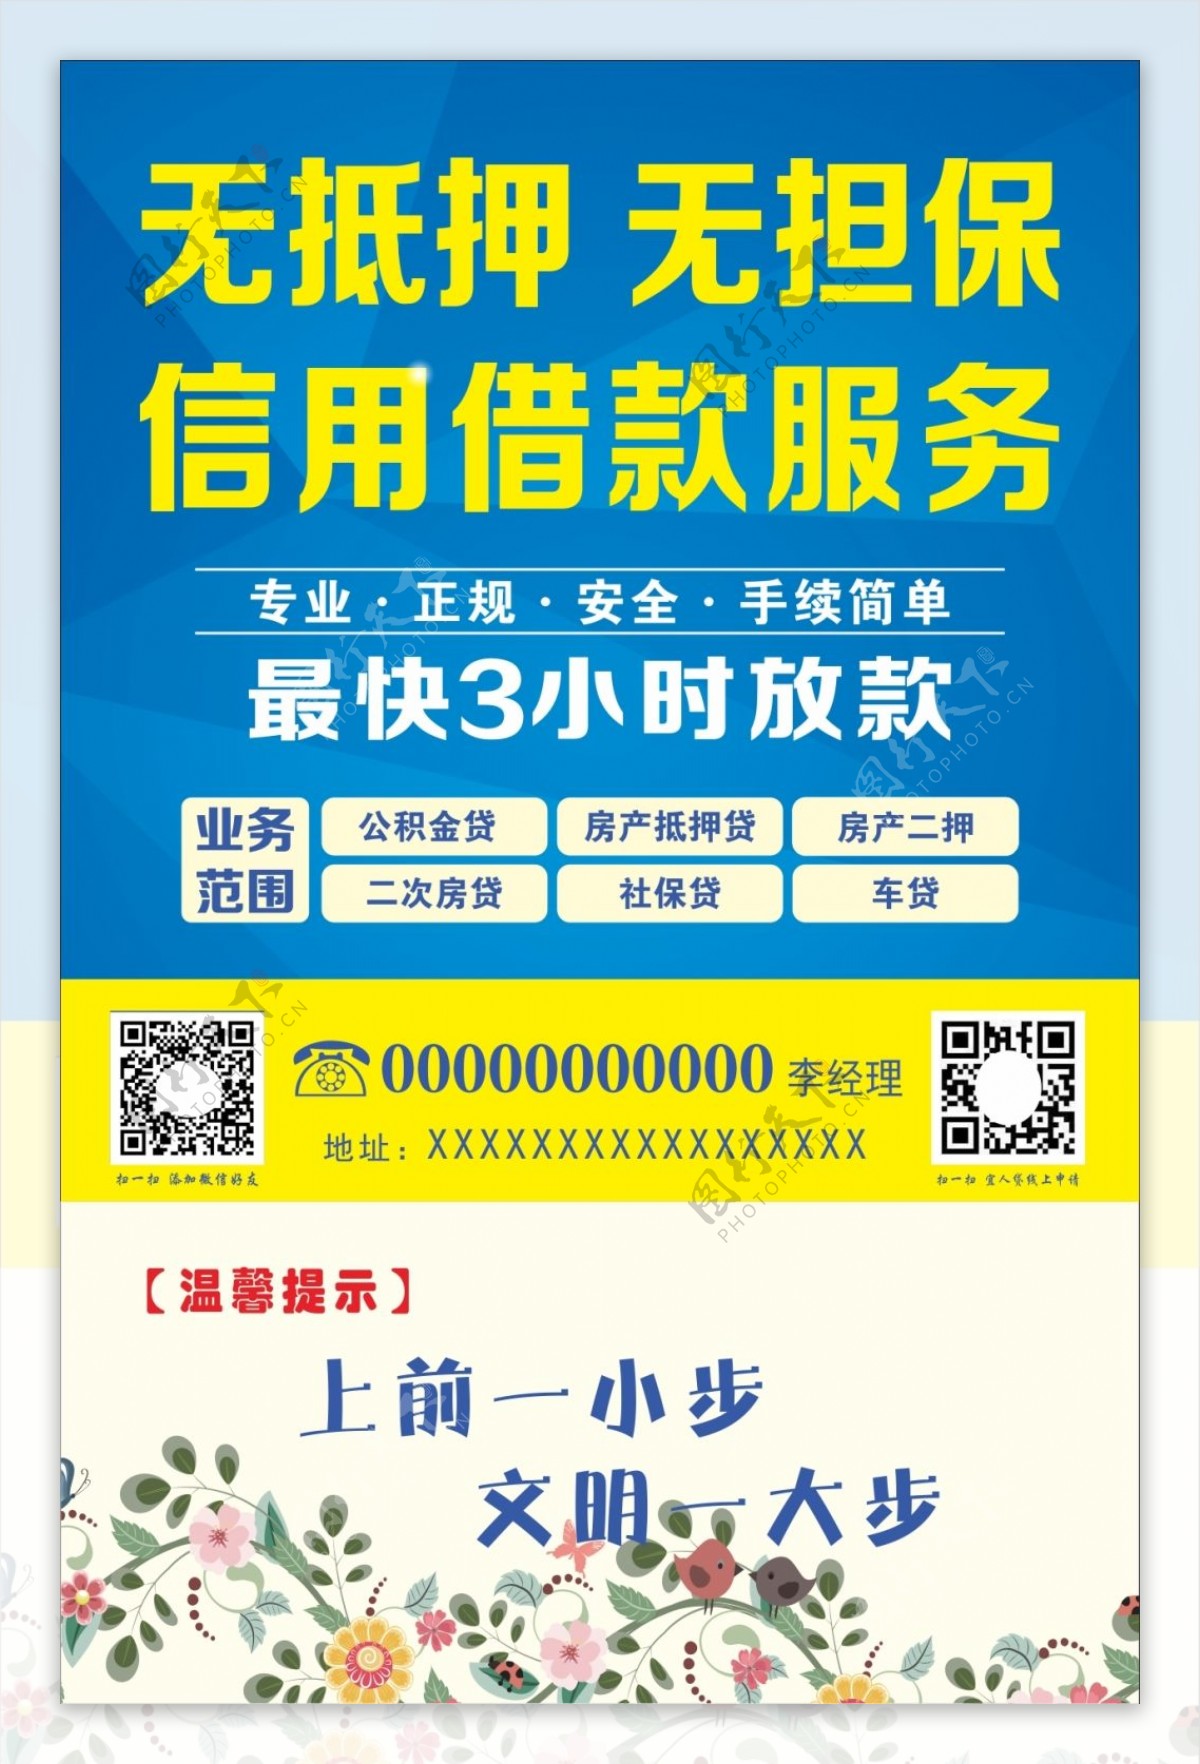 温馨提示台卡无抵押免担保贷款蓝色海报